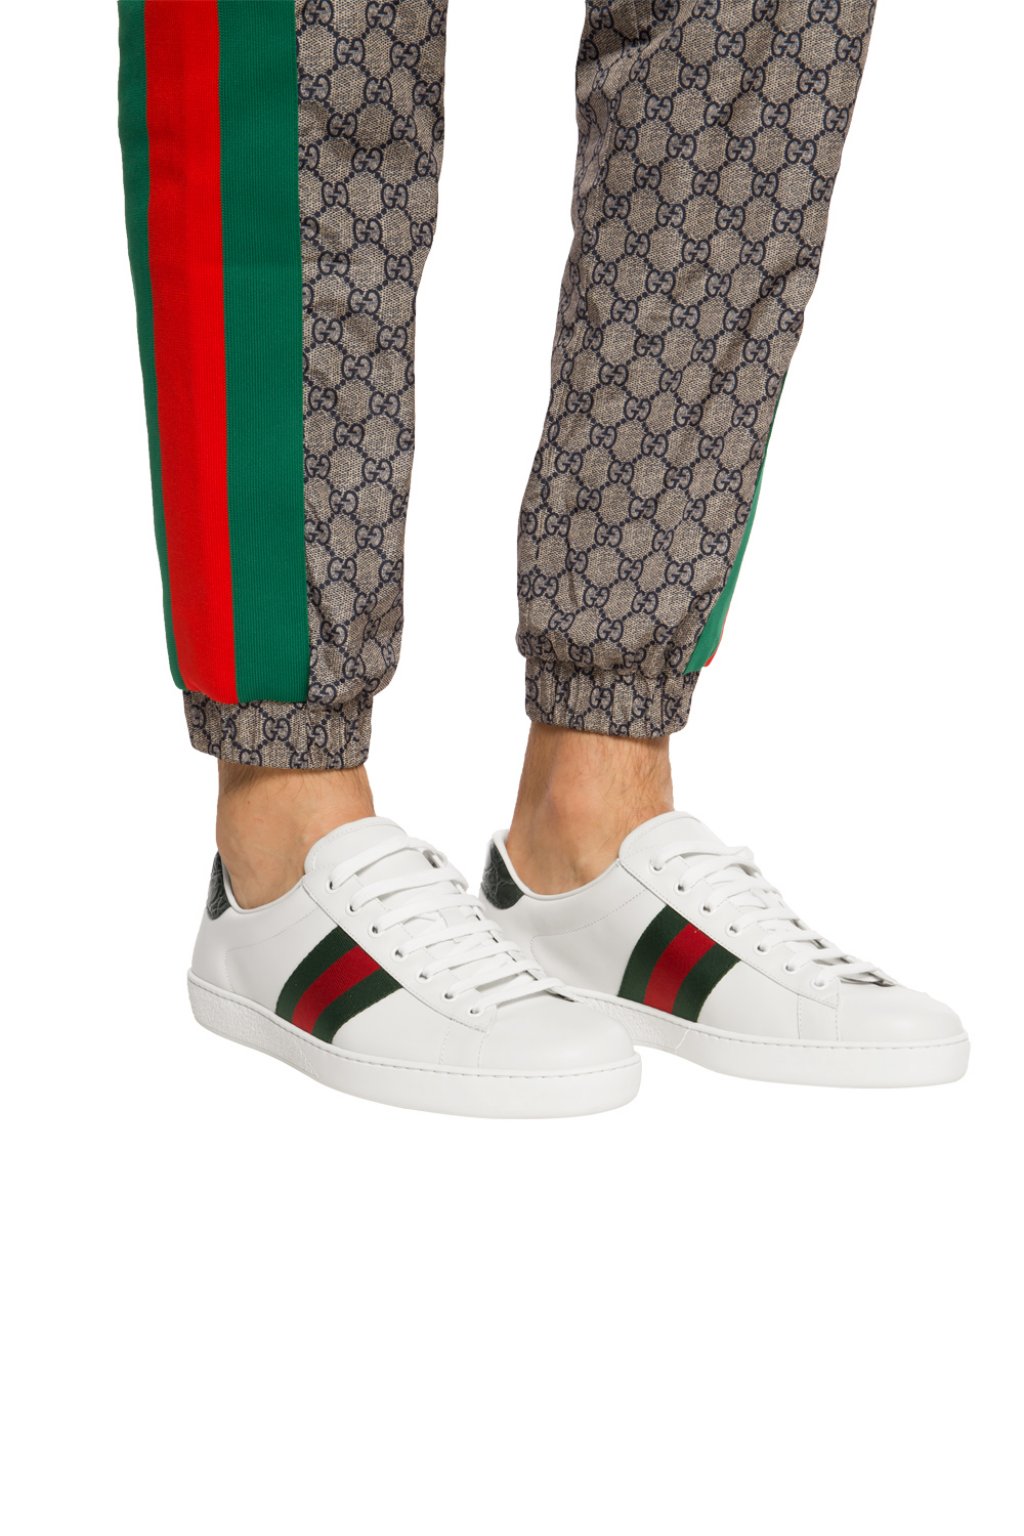 Gucci Ken Scott Ace Sneakers